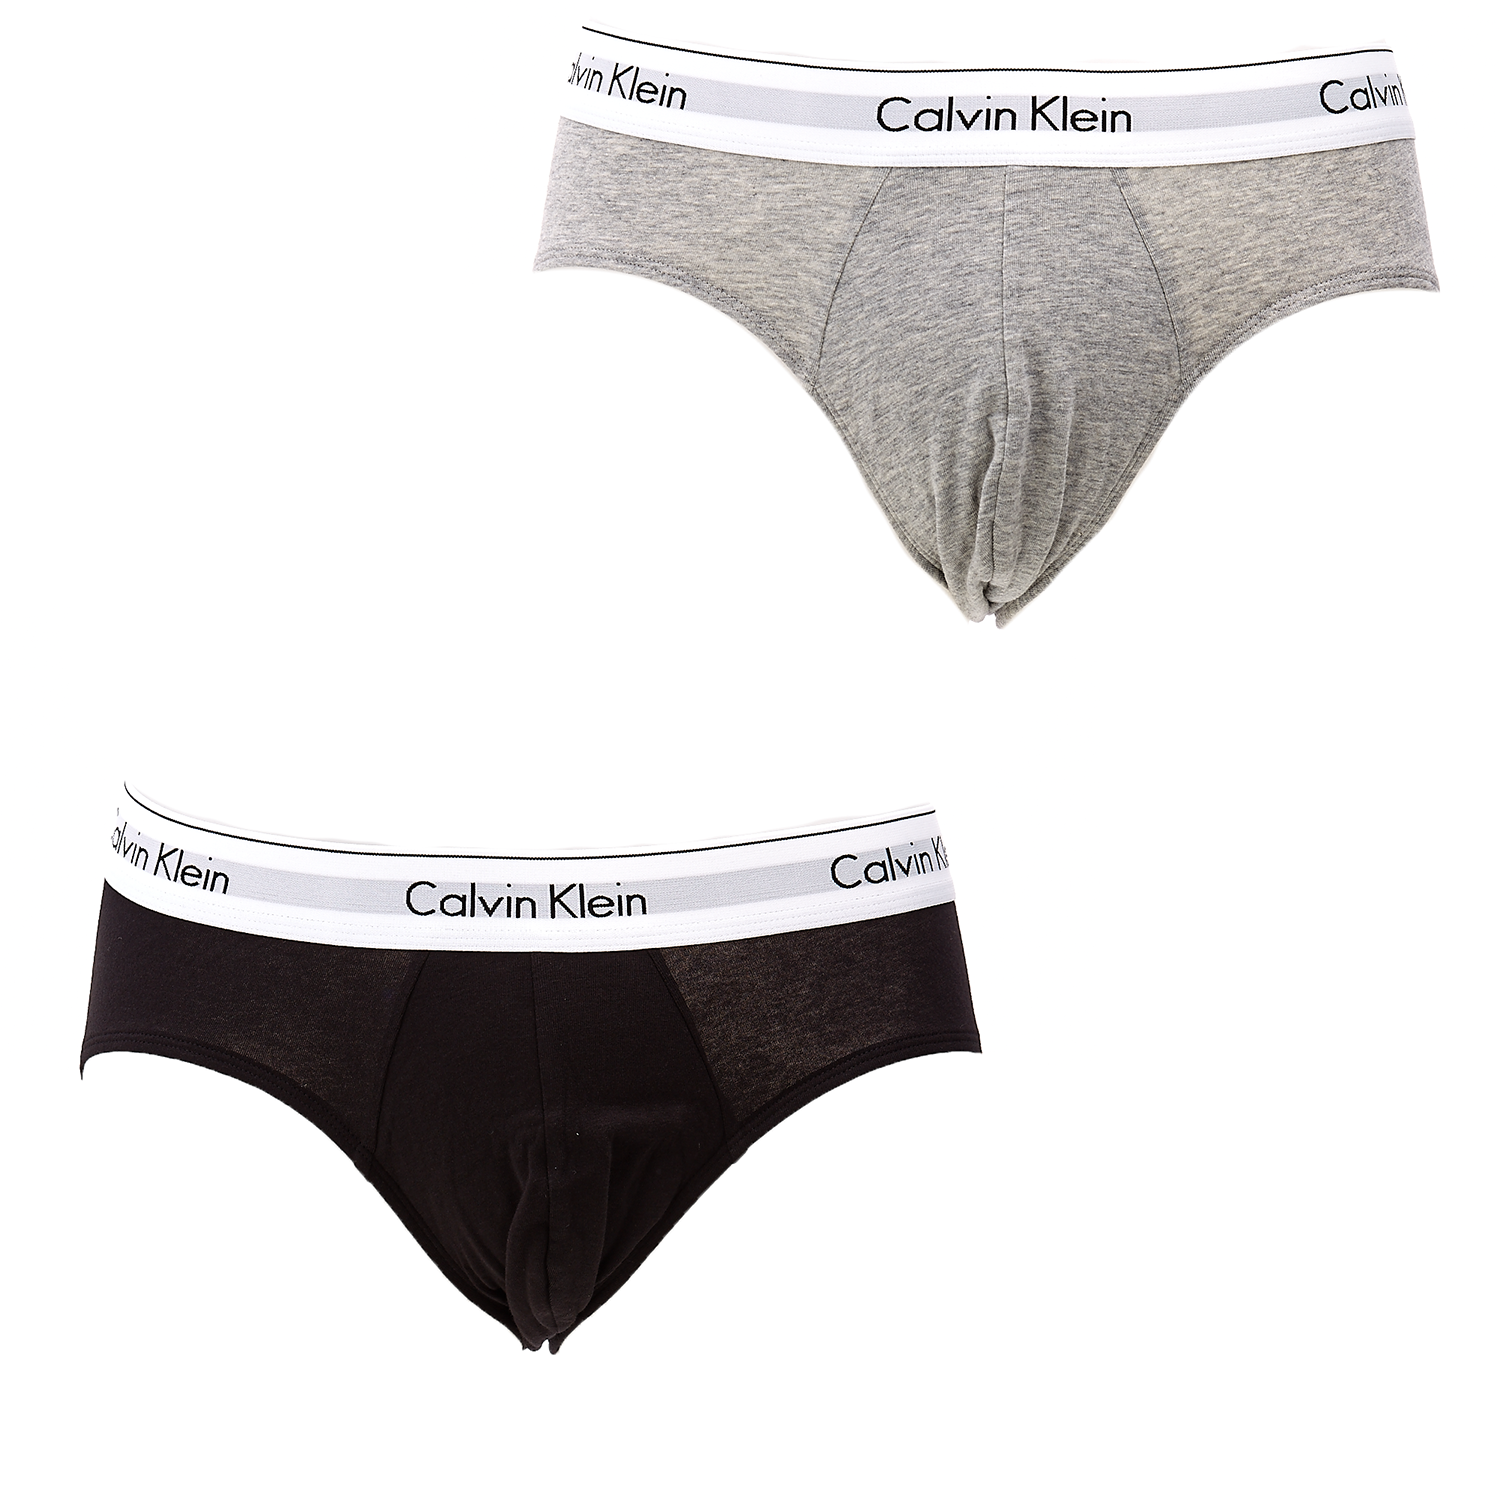 Ανδρικά/Ρούχα/Εσώρουχα/Σλίπ CK UNDERWEAR - Σετ σλιπ Calvin Klein μαύρο-γκρι